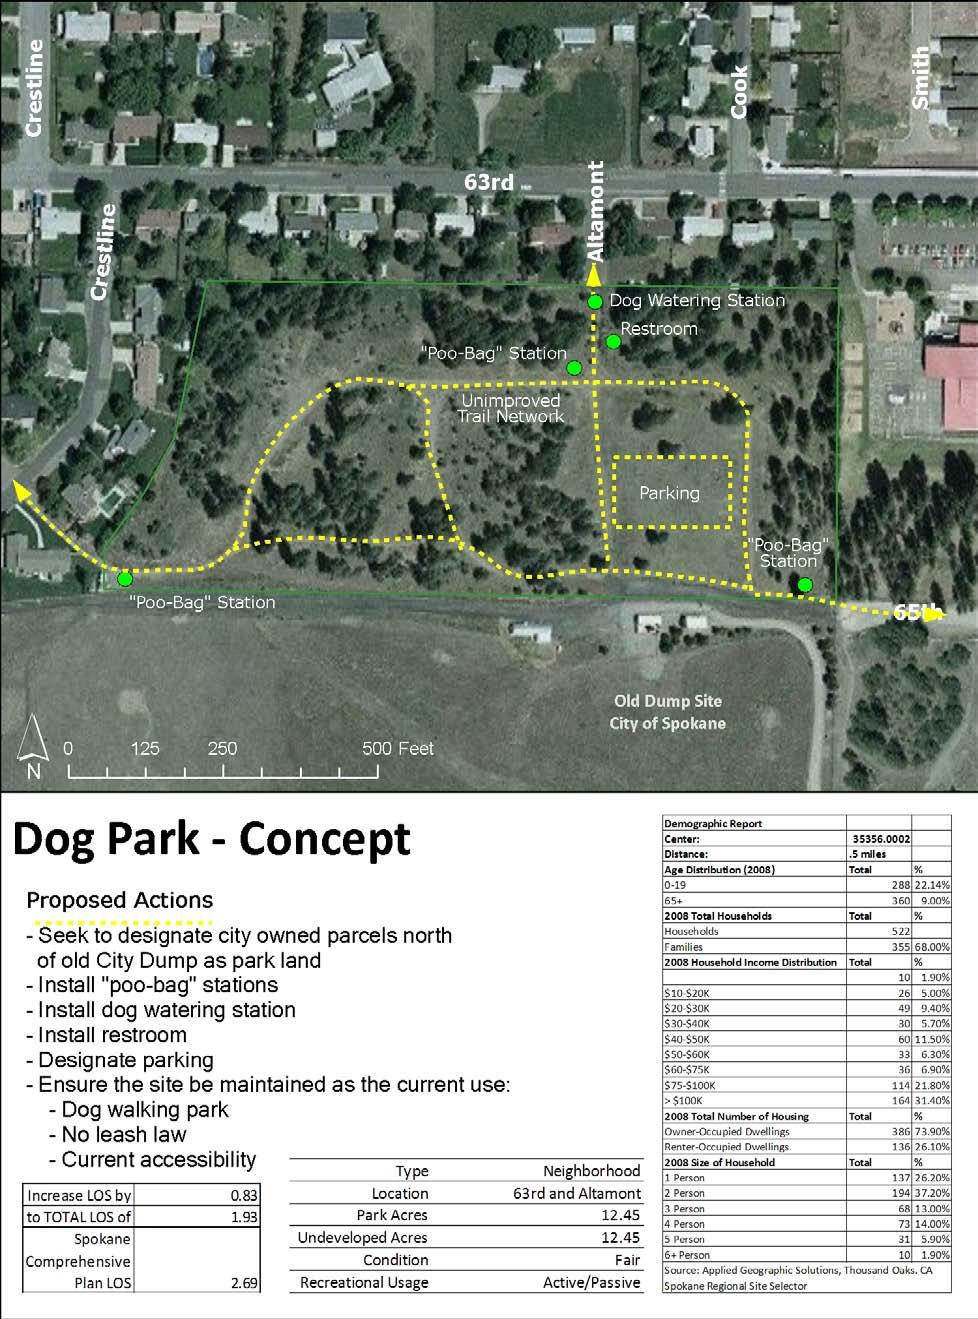 Figure 33 Dog Park Improvement Concept - Source: Spokane